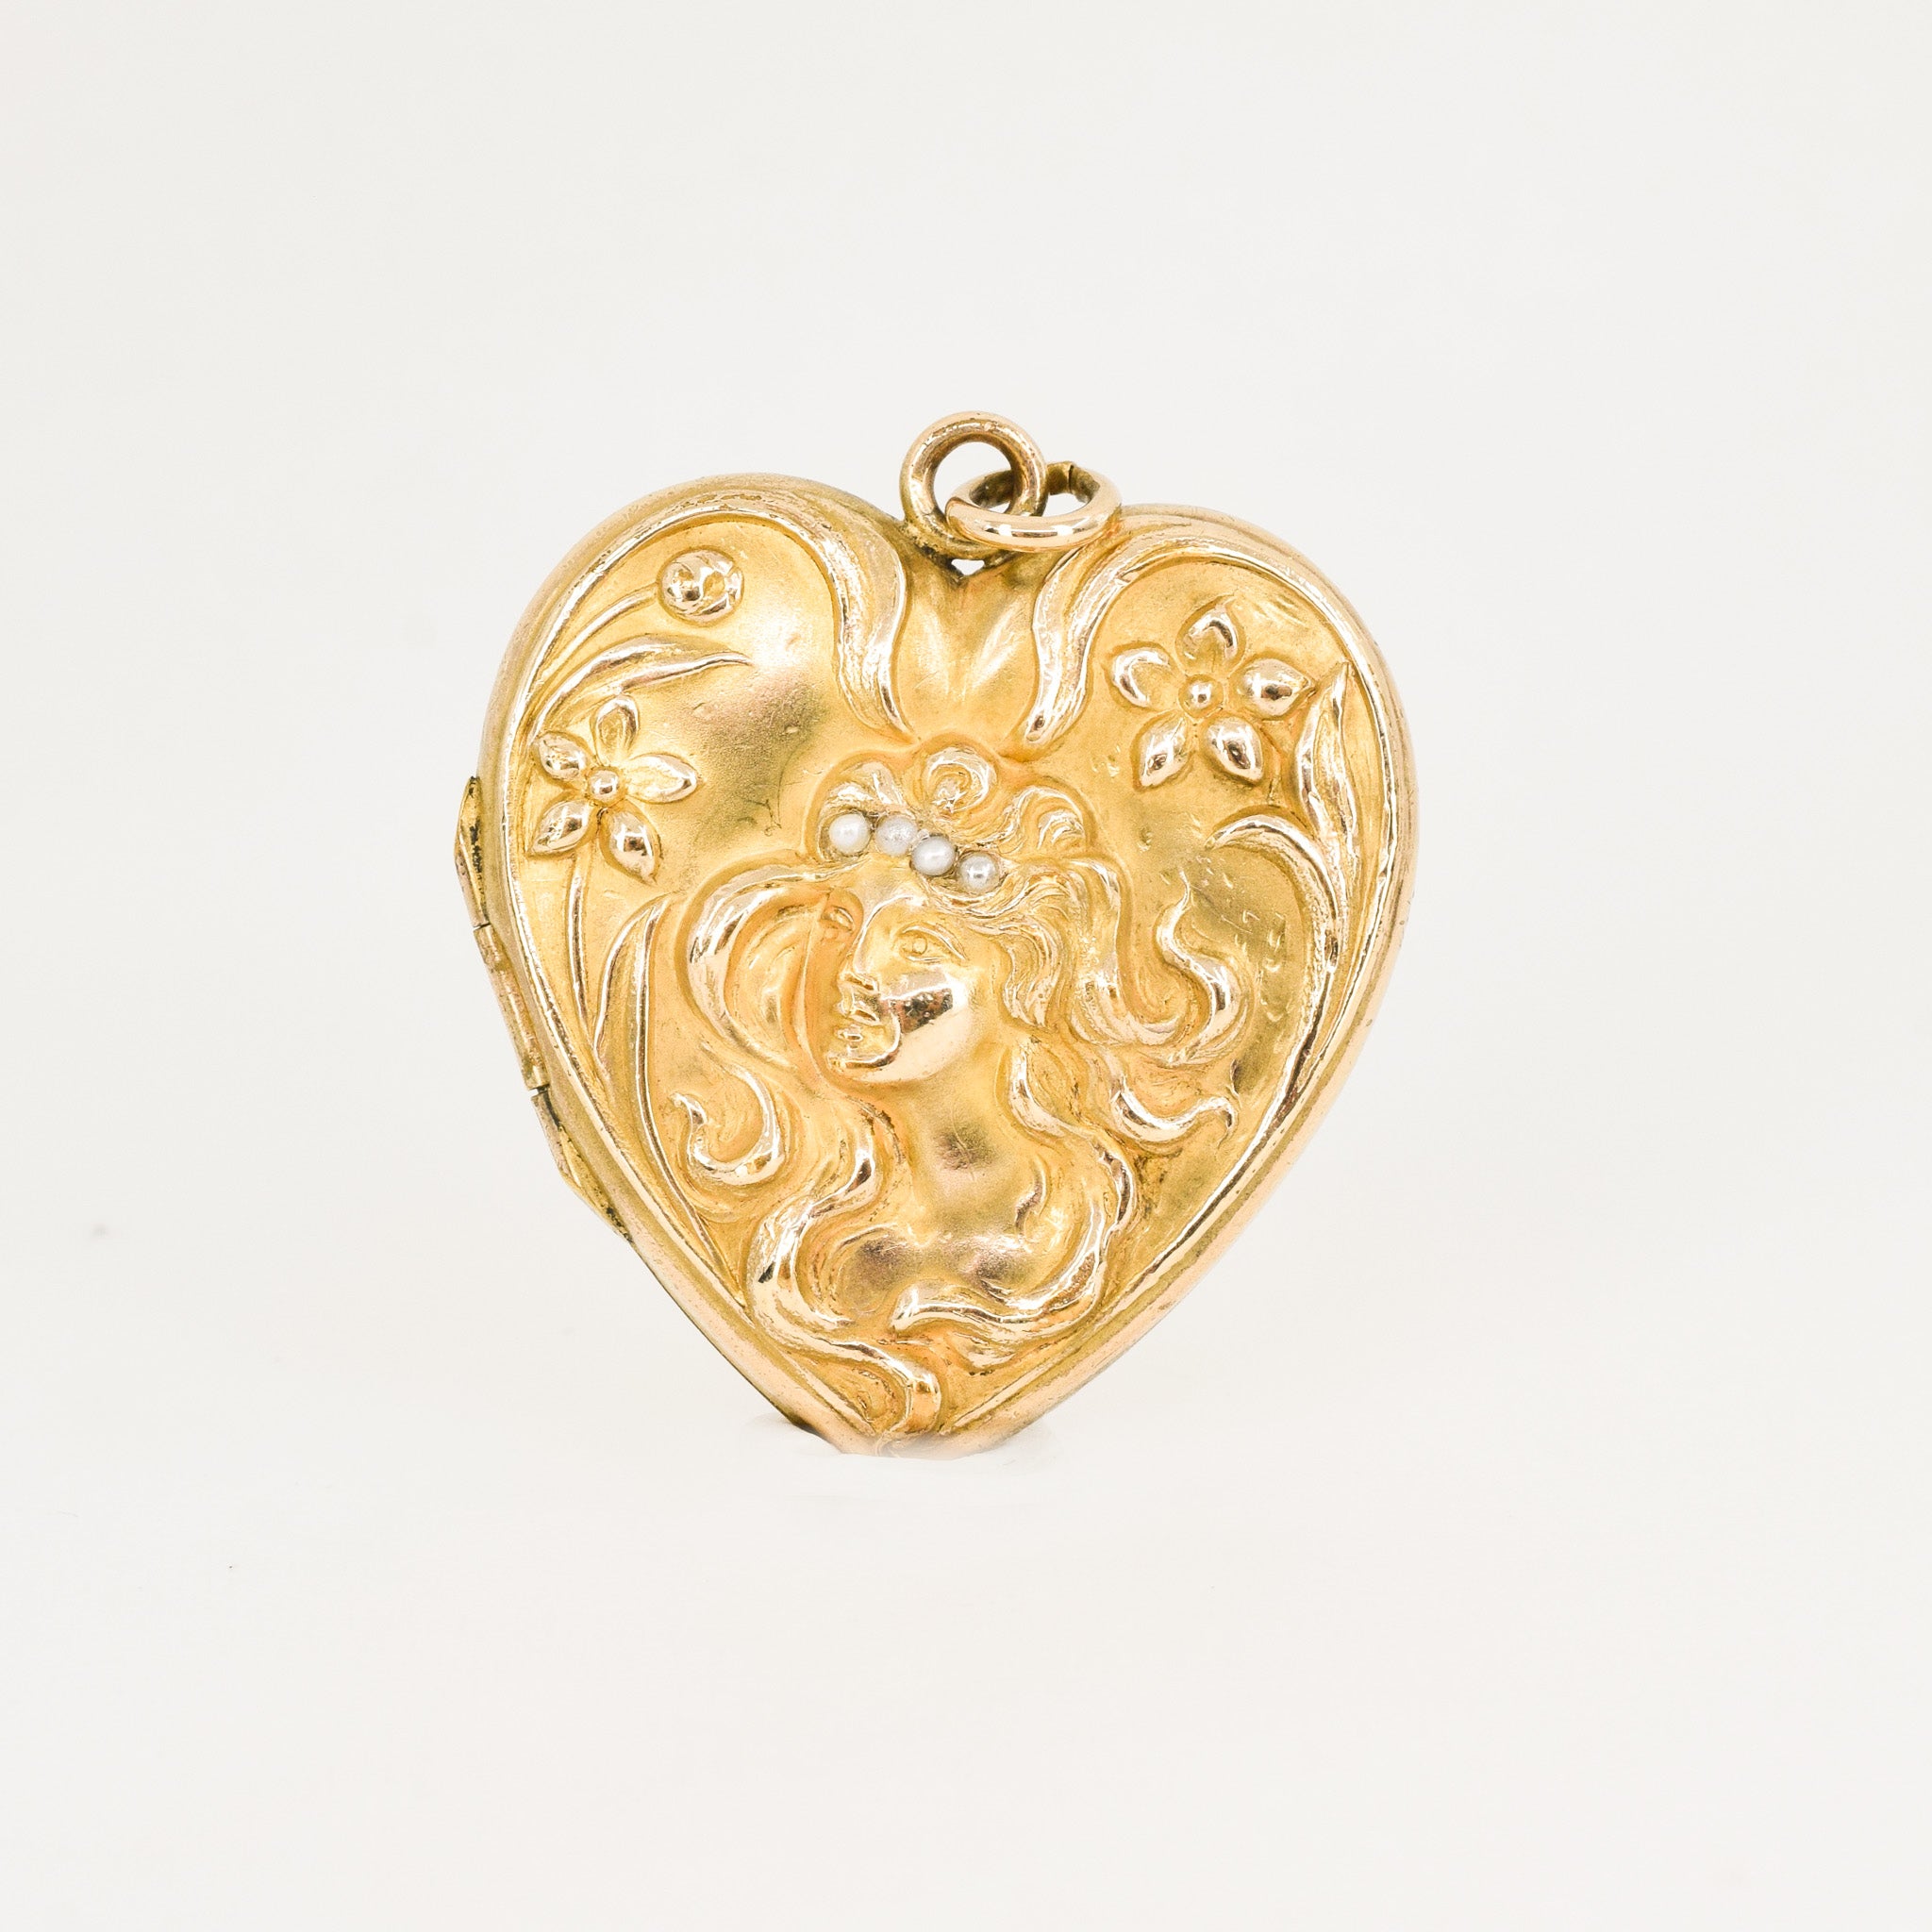 Antique Art Nouveau Repousse Seed Pearl Heart Locket